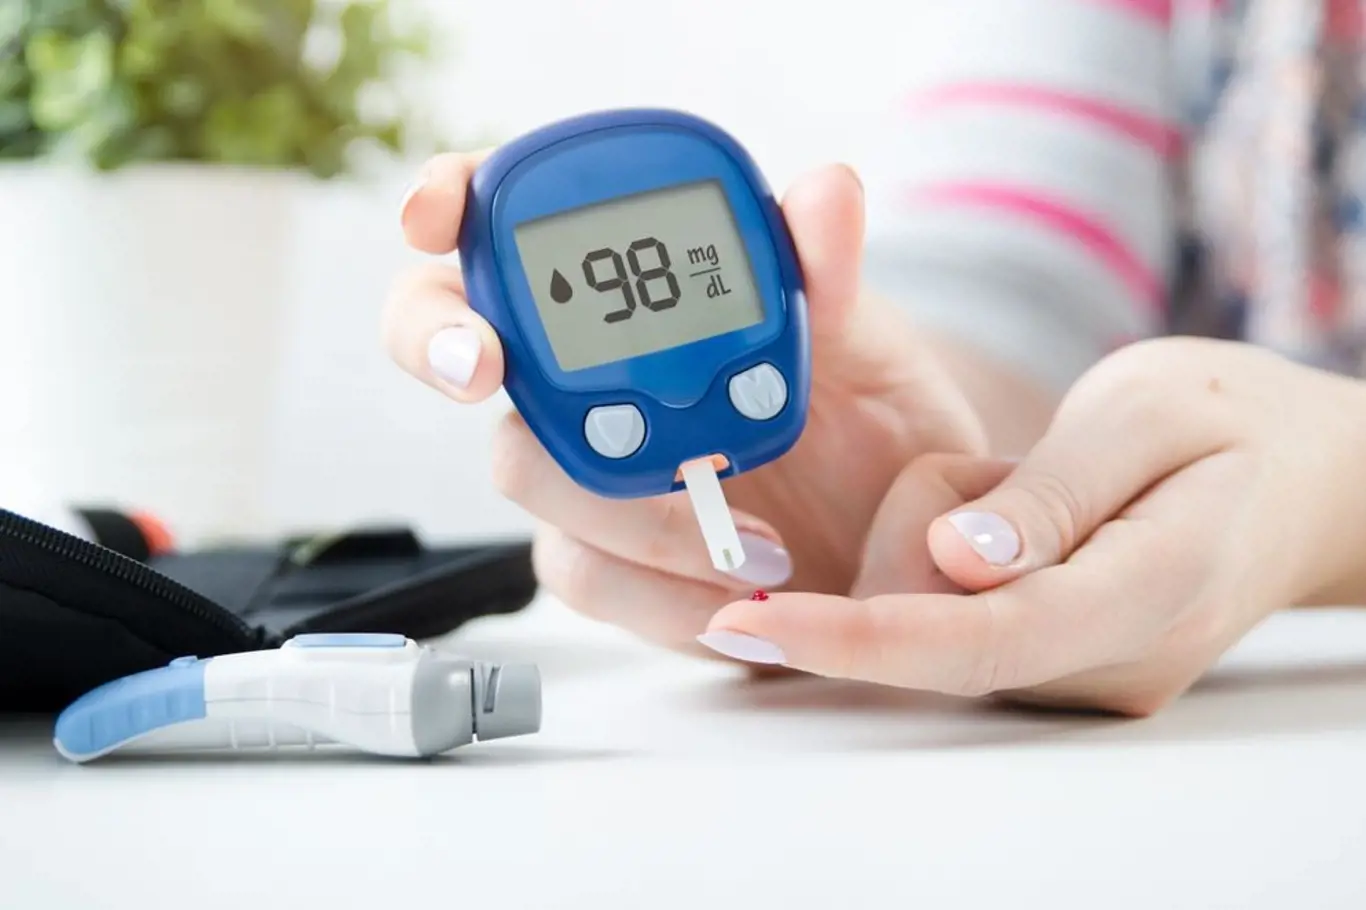 Hladinu krevního cukru lze měřit různými způsoby